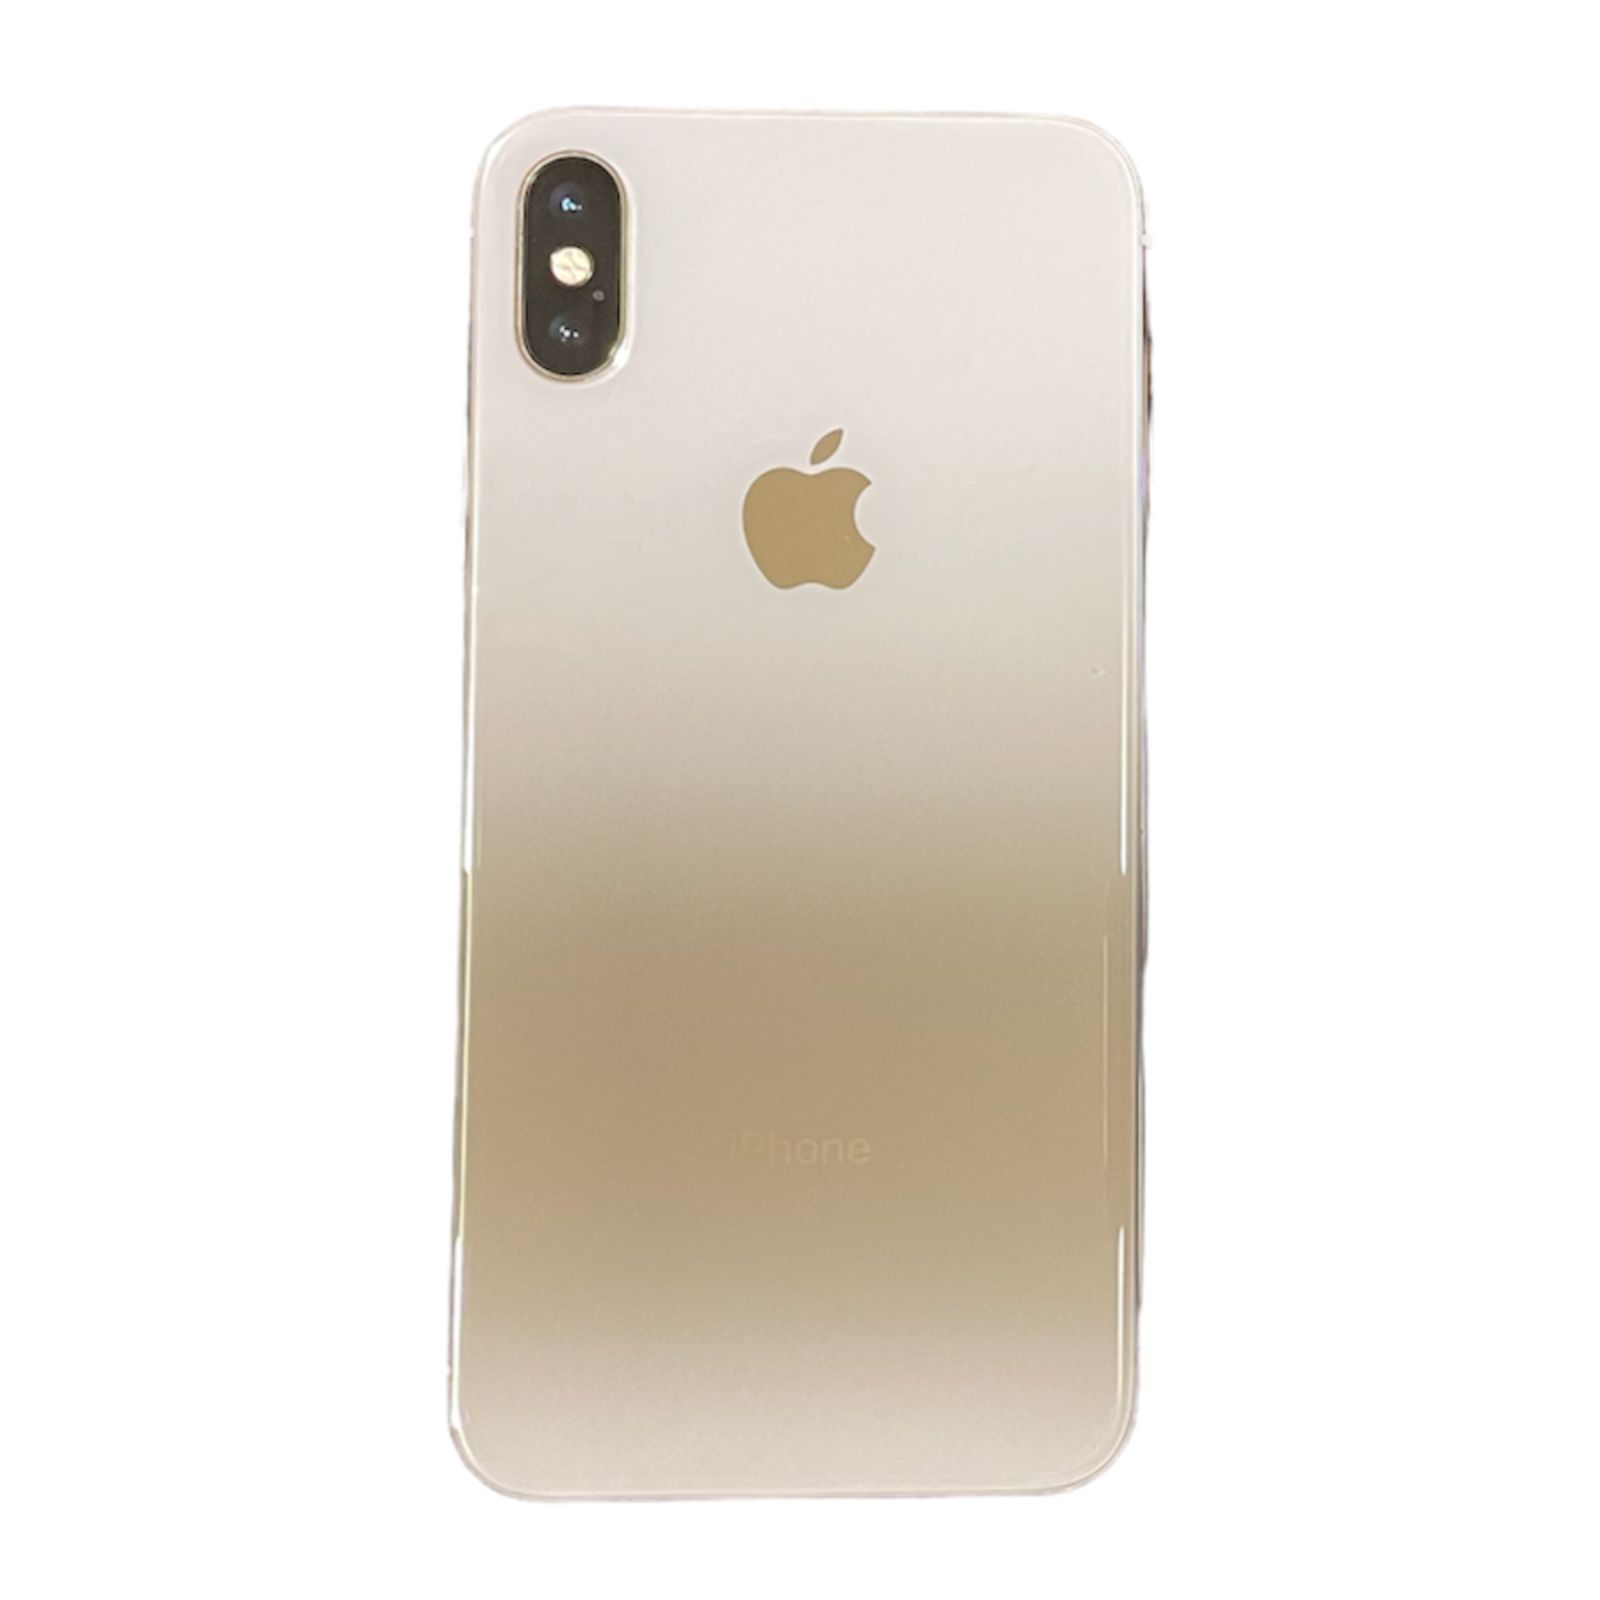 売り本物iPhone X 256GB Silver 本体 スマートフォン本体